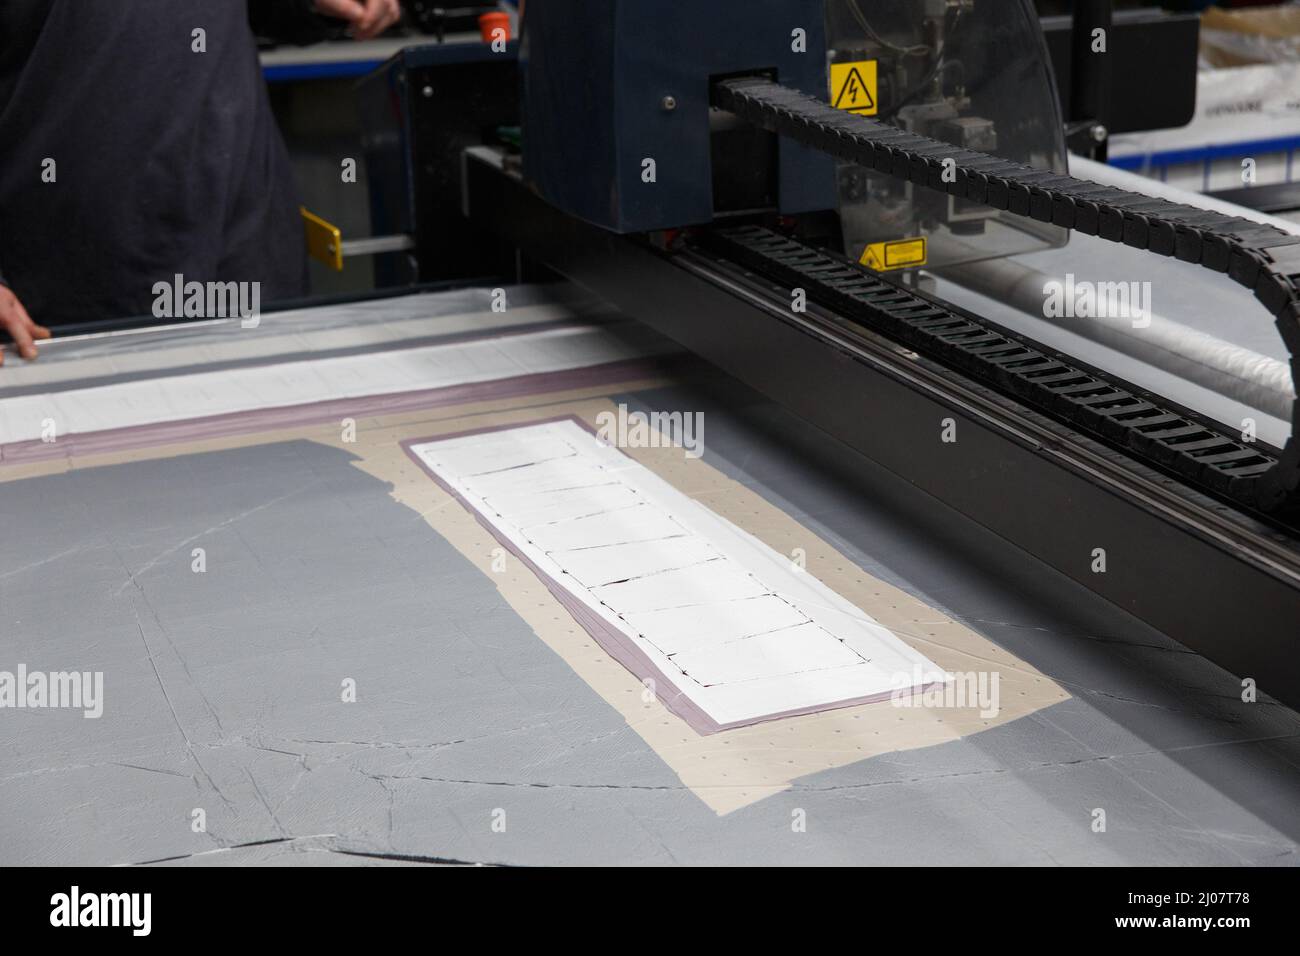 Industrielle Bekleidungsfabrik, ein spezielles Laser-Schneidemaster schneidet bestimmte textile Stücke aus. Konzept: Lasermaschine, Arbeit in einer Fabrik, Automatische Cu Stockfoto